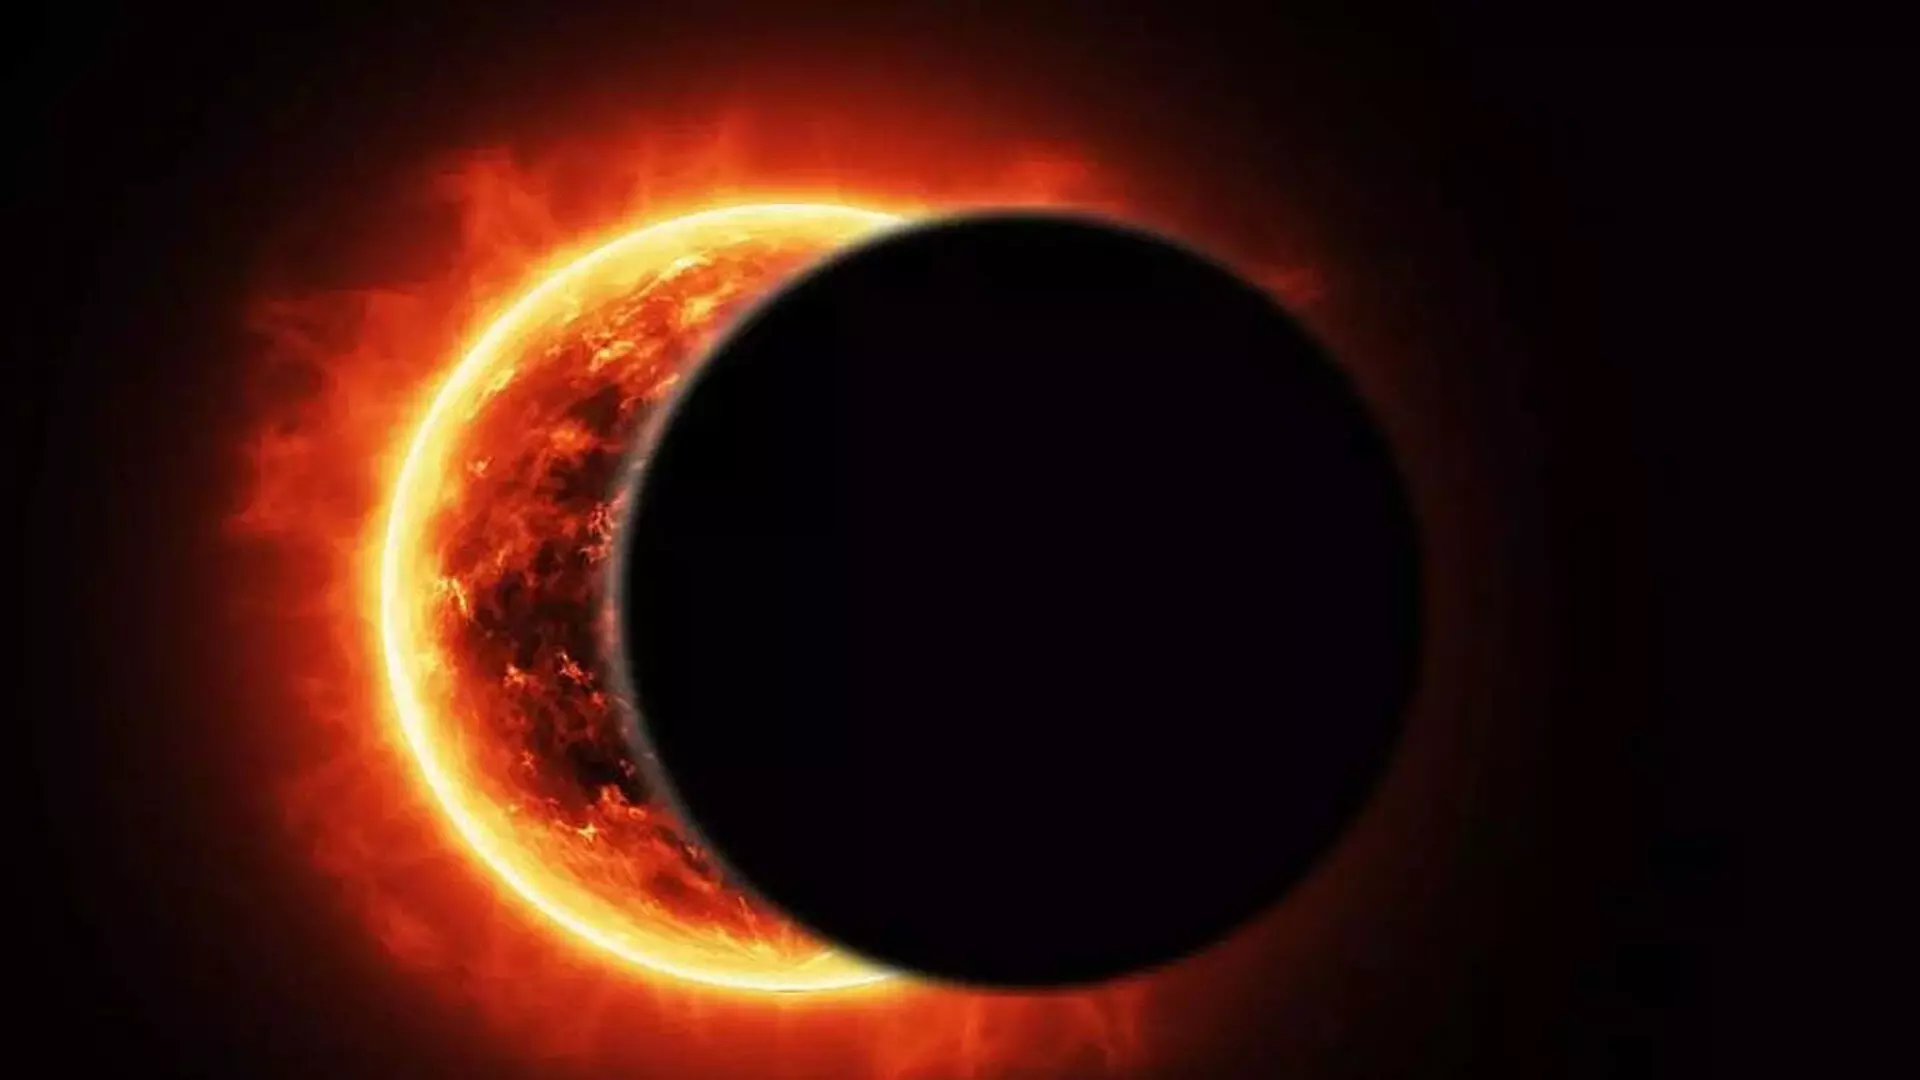 8 अप्रैल को होगा साल पहला सूर्य ग्रहण, जानिए इससे जुडी सारी जानकारी